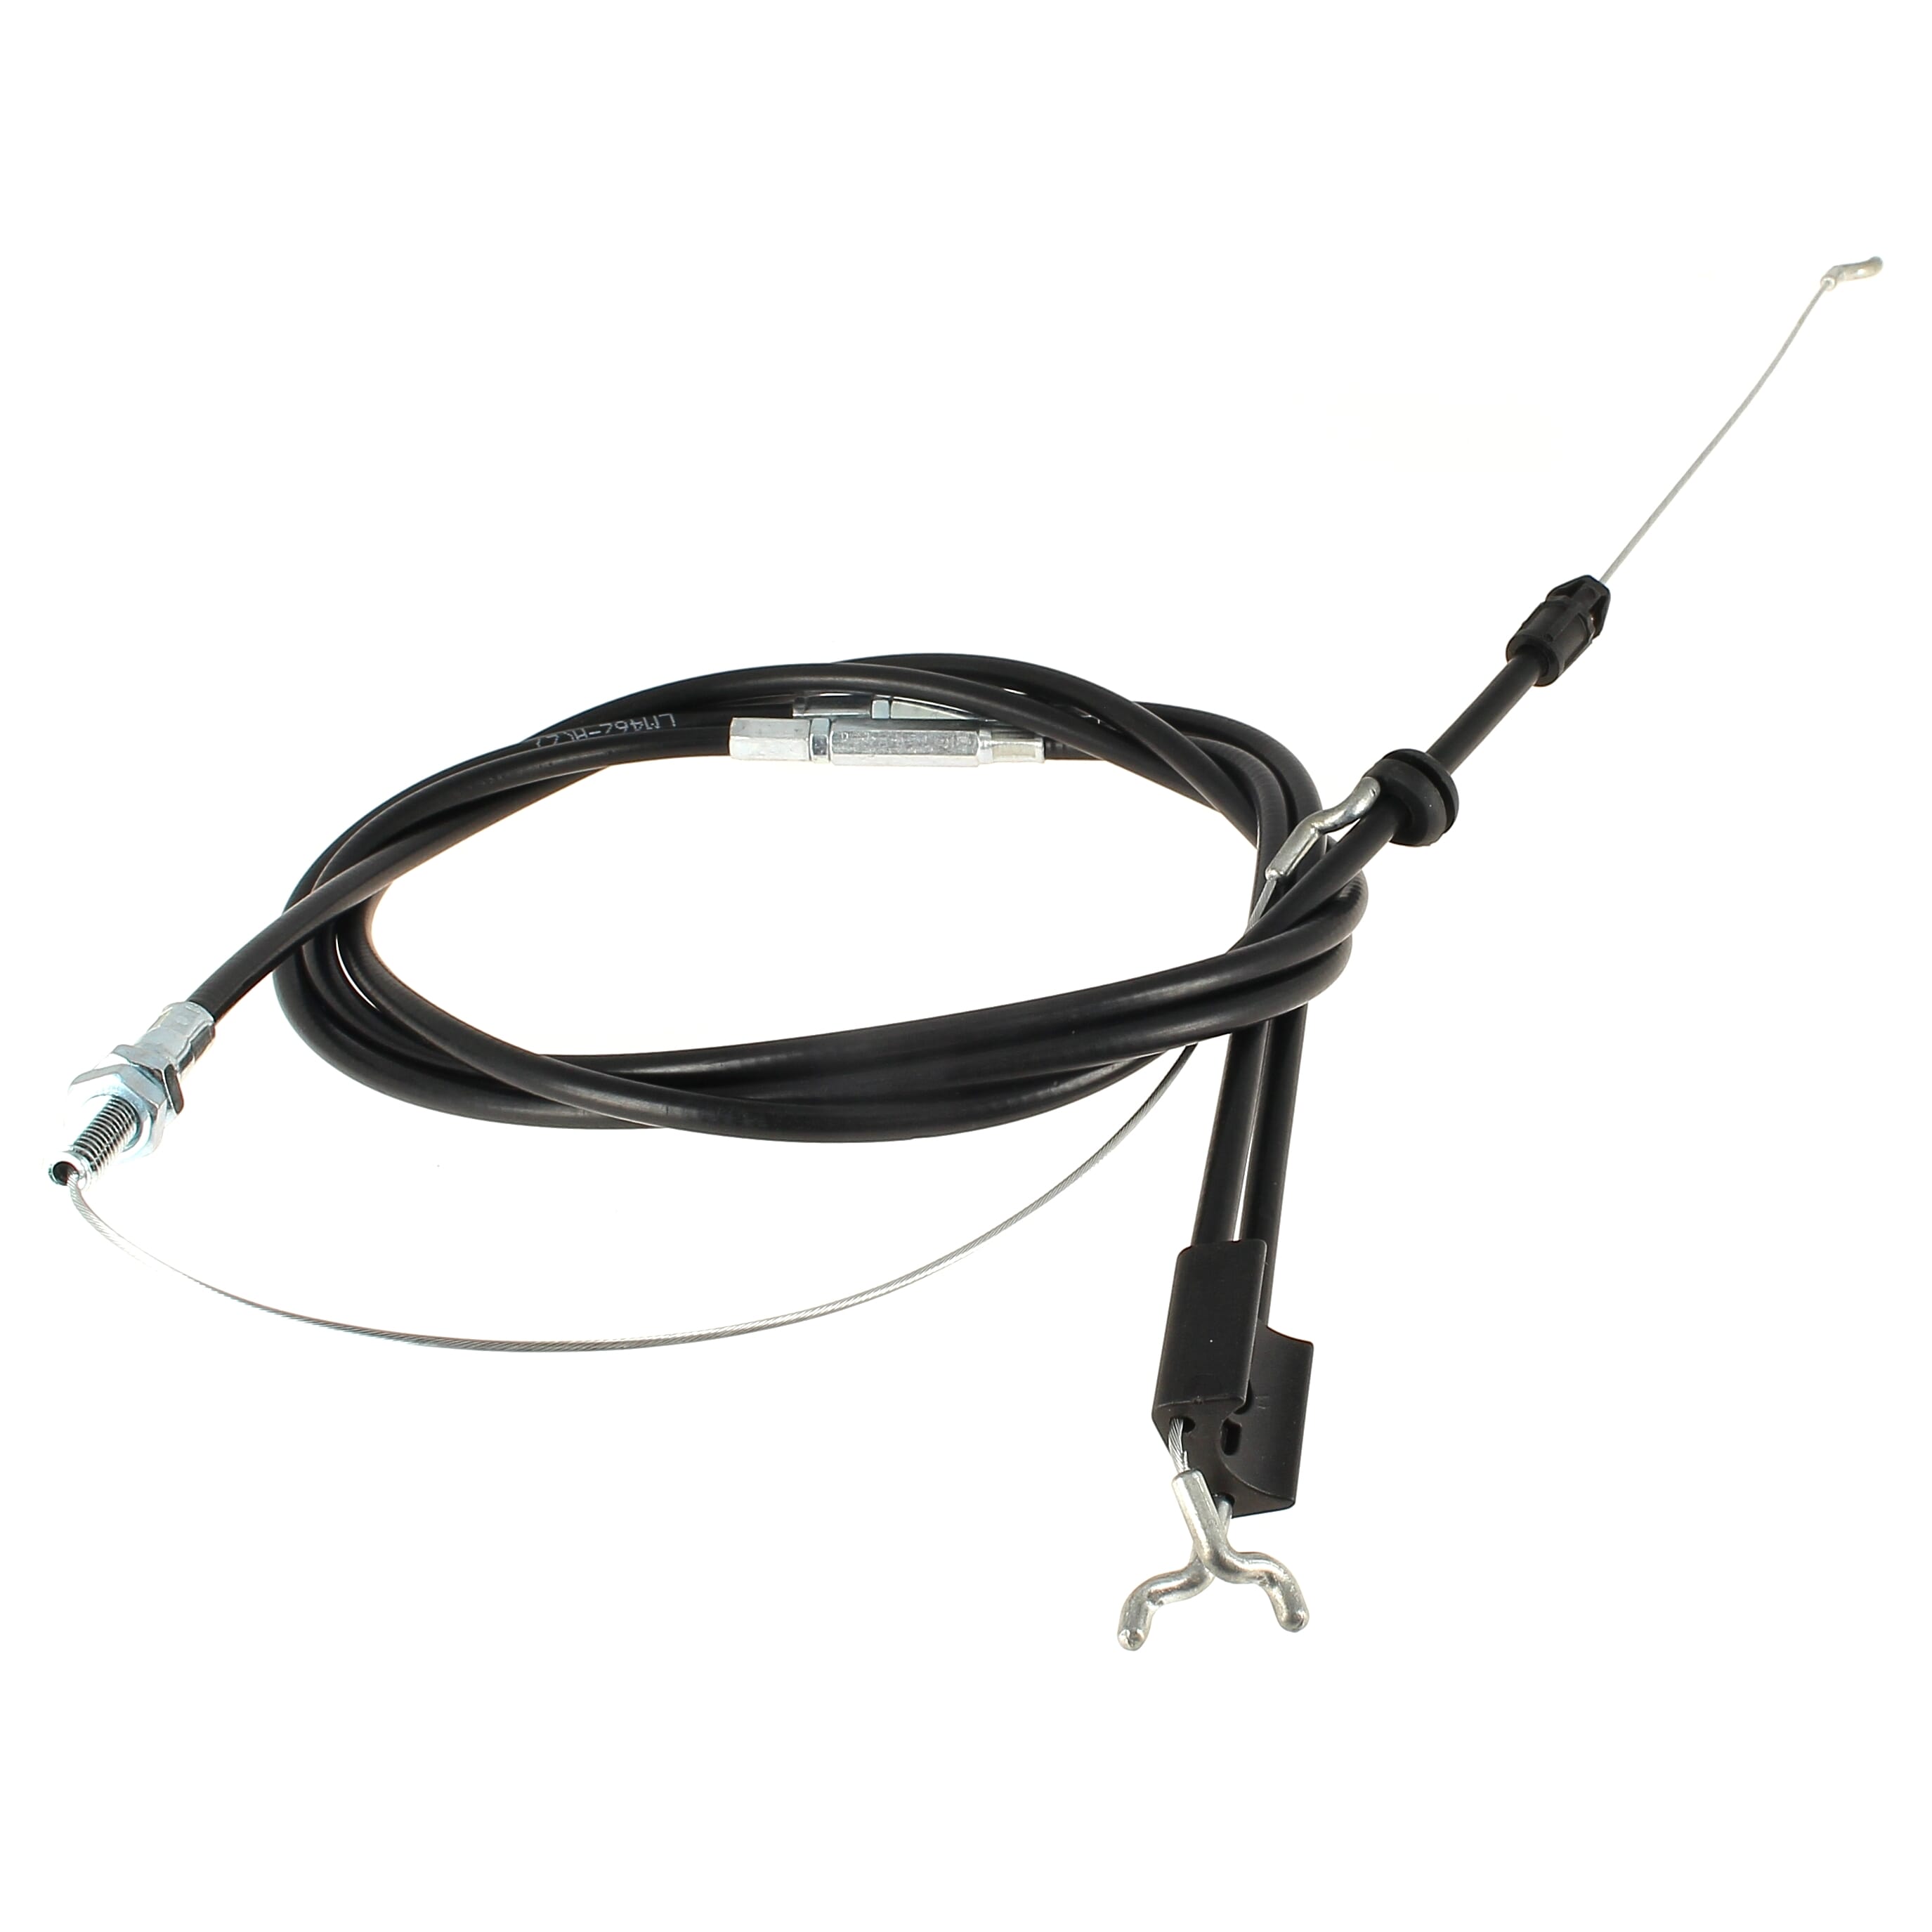 SWORN 3810007780 Cable de Traction 